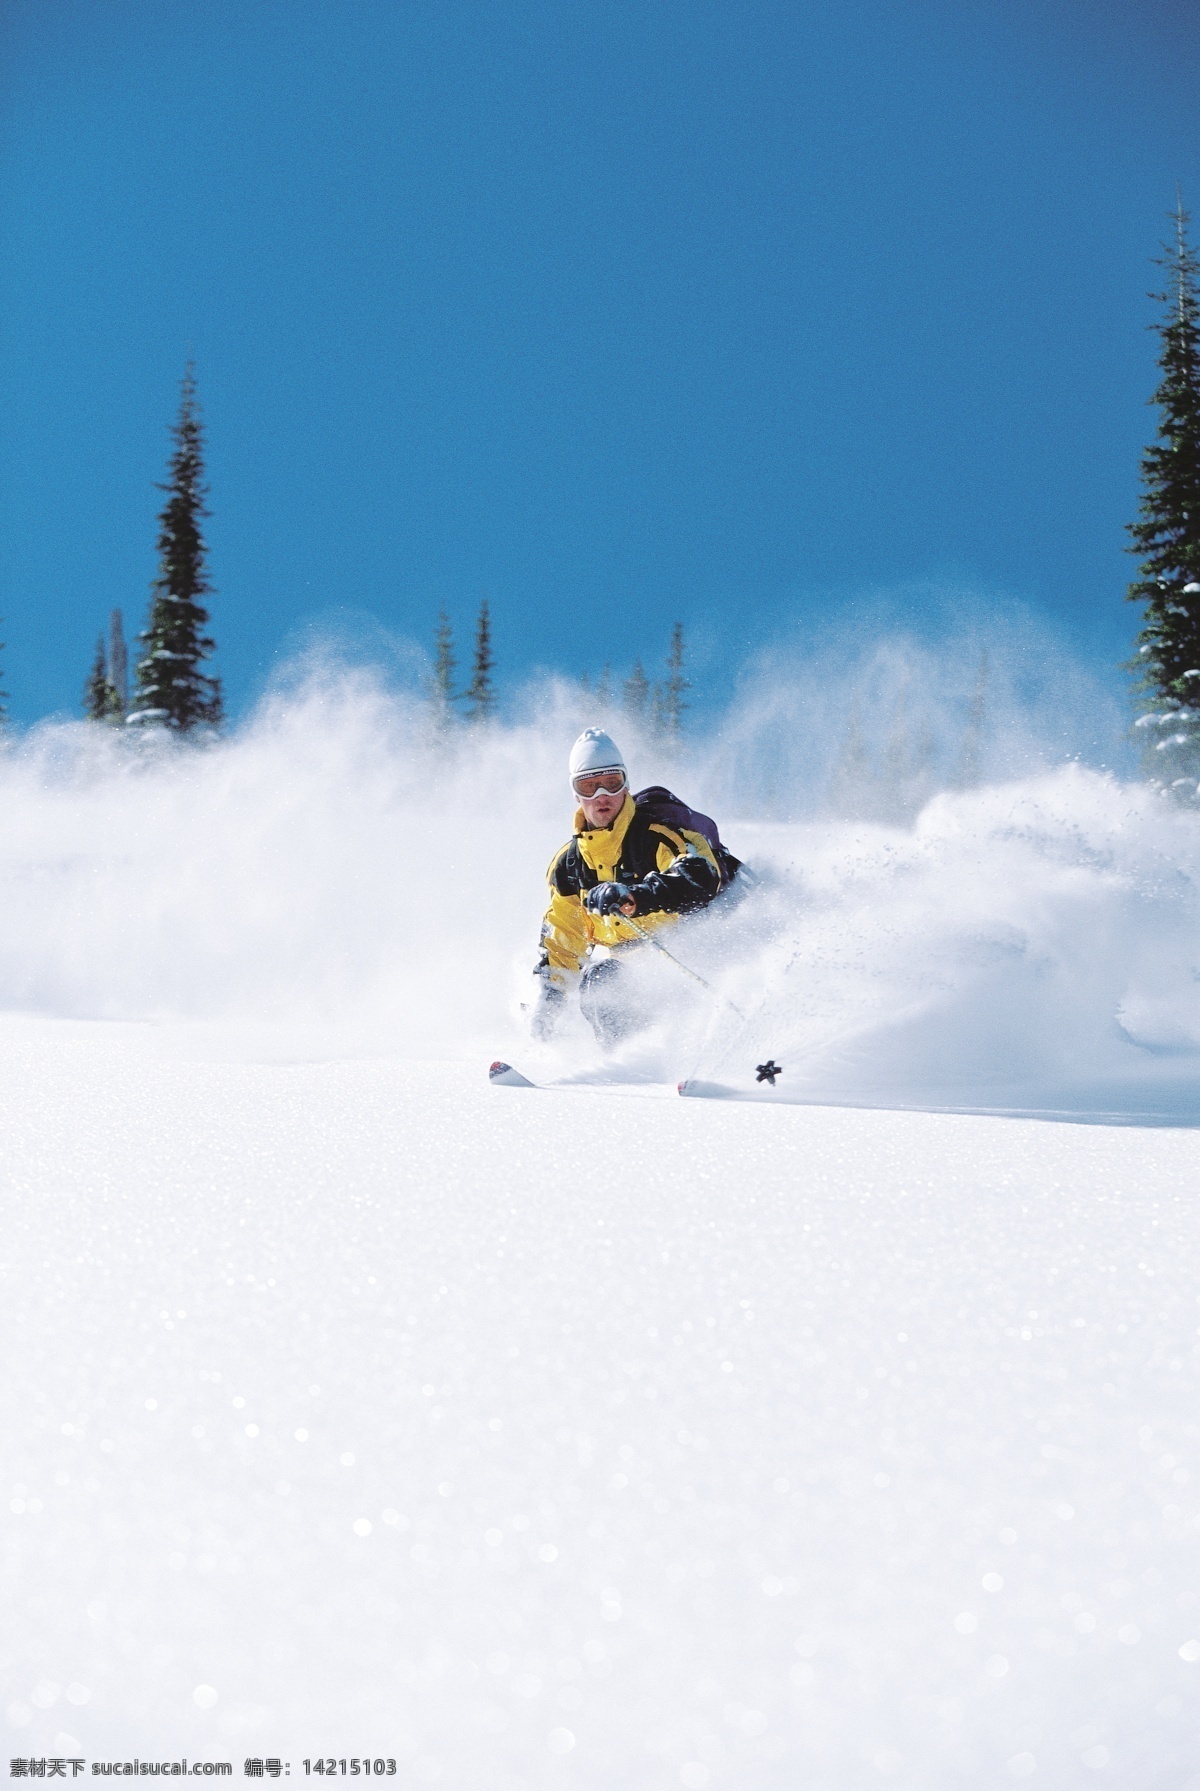 滑雪 运动员 高清 冬天 雪地运动 划雪运动 极限运动 体育项目 下滑 速度 运动图片 生活百科 雪山 美丽 雪景 风景 摄影图片 高清图片 体育运动 白色